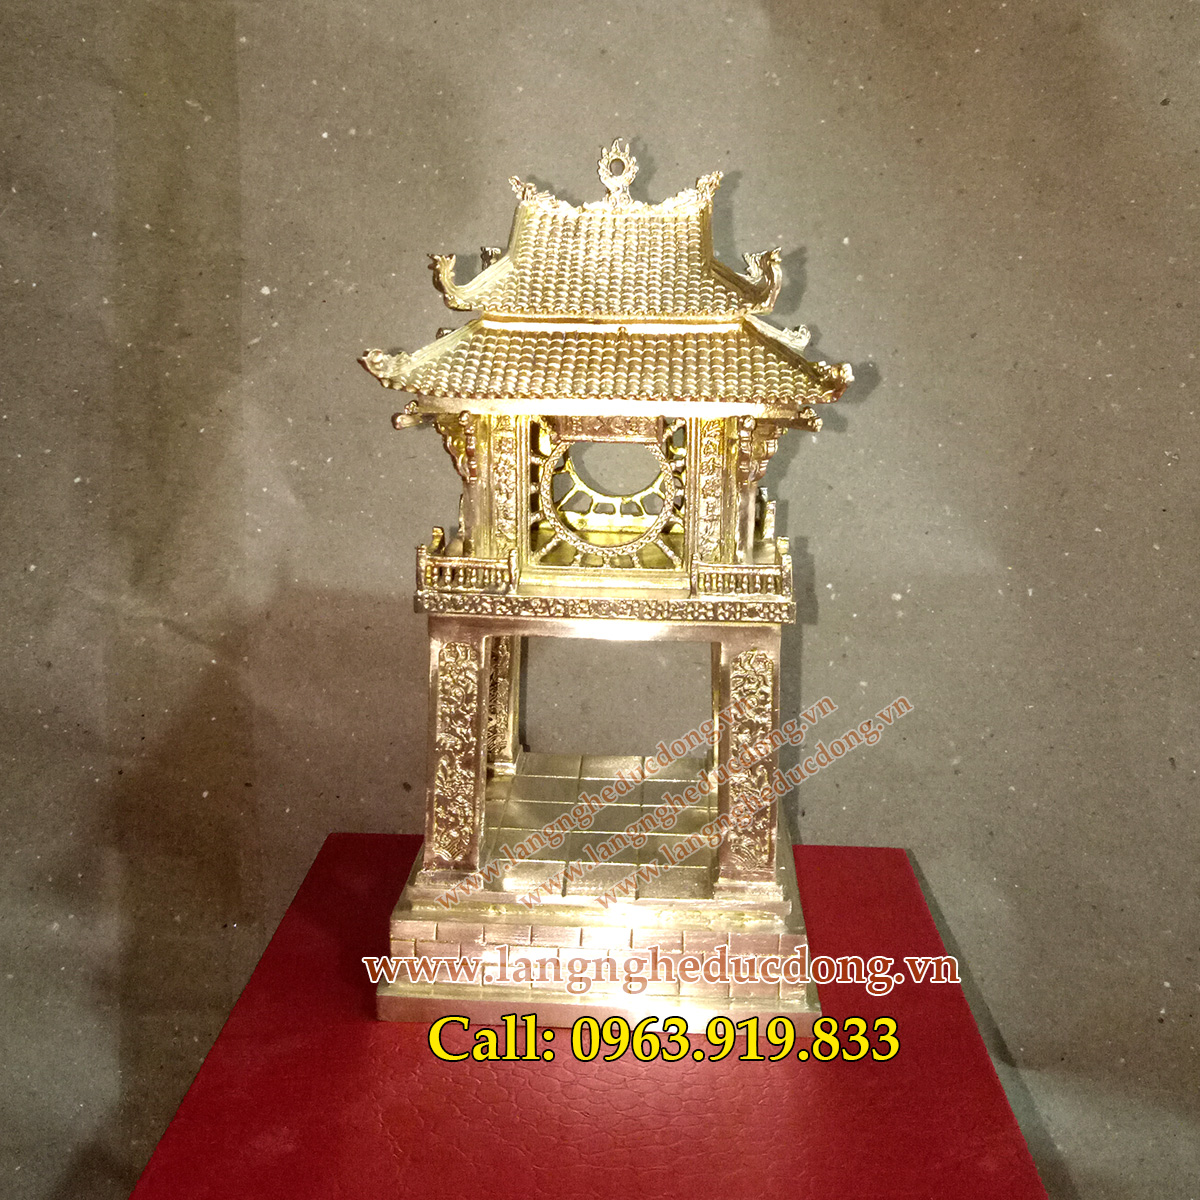 langngheducdong.vn - quà tặng bằng đồng, quà tặng cao cấp, đồ đồng cao cấp, mô hình khuê văn các